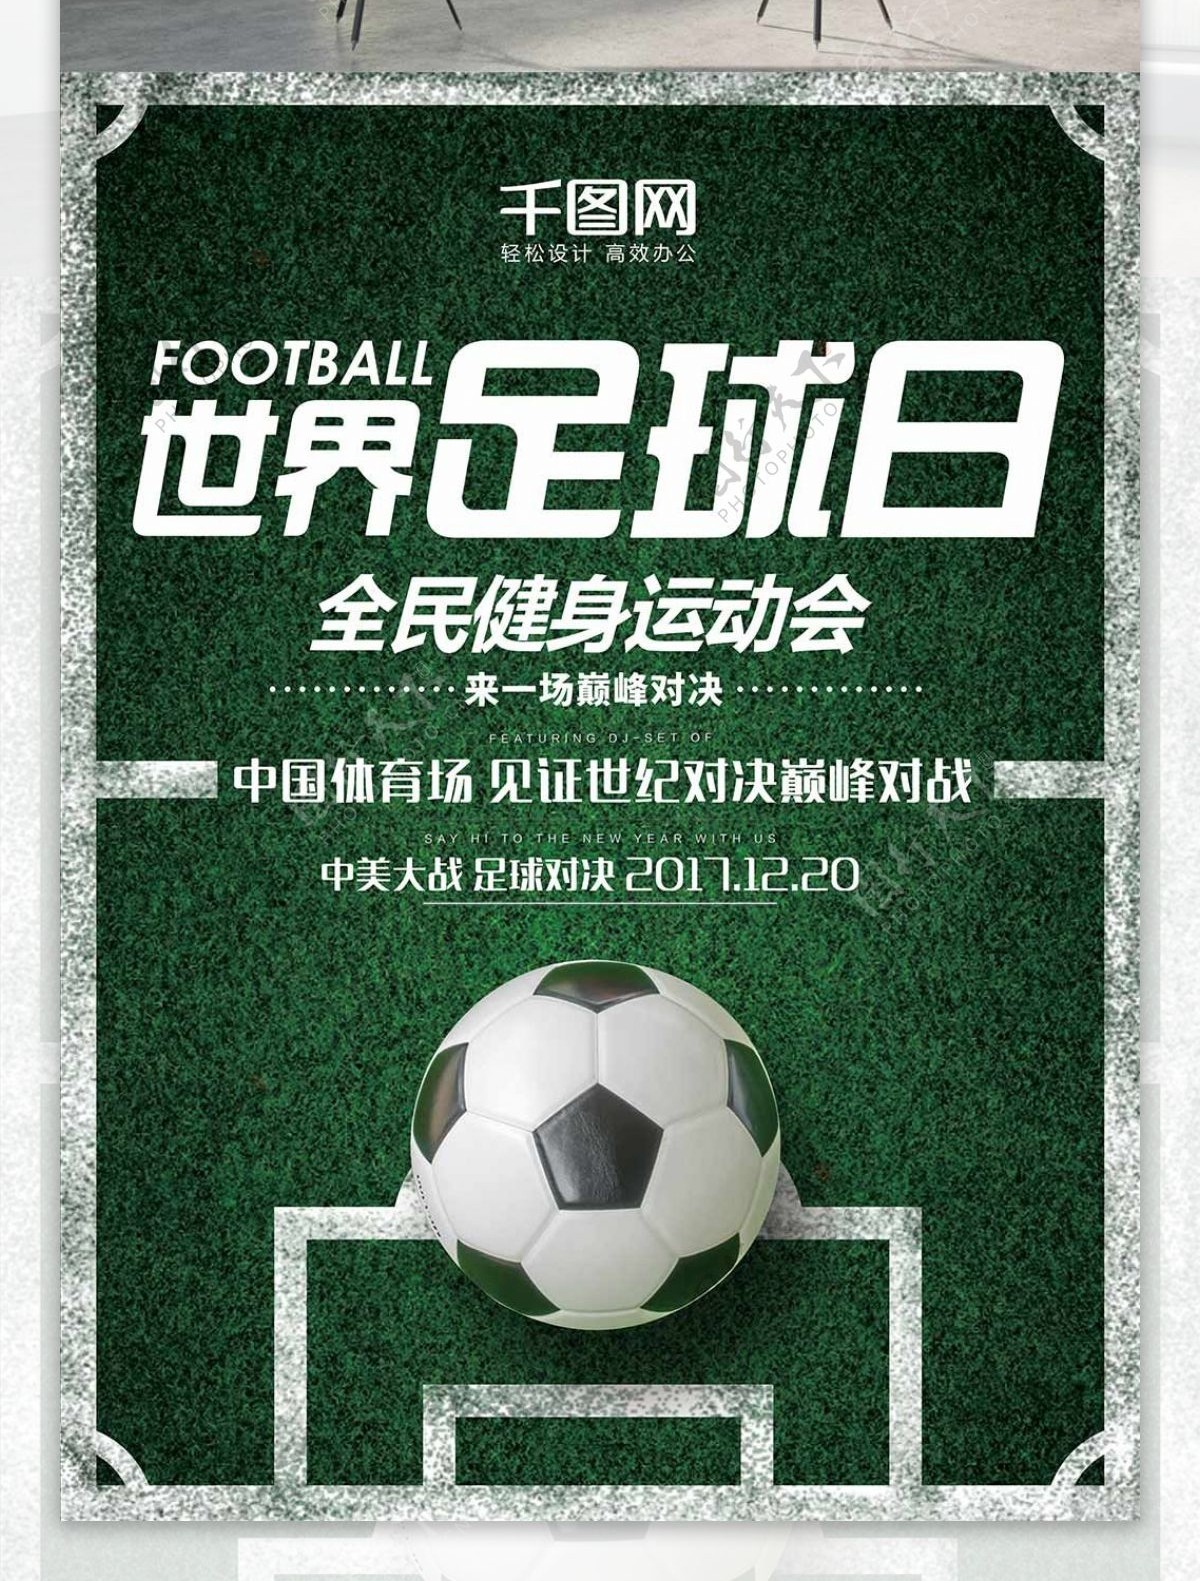 绿色简约草地运动体育世界足球日海报